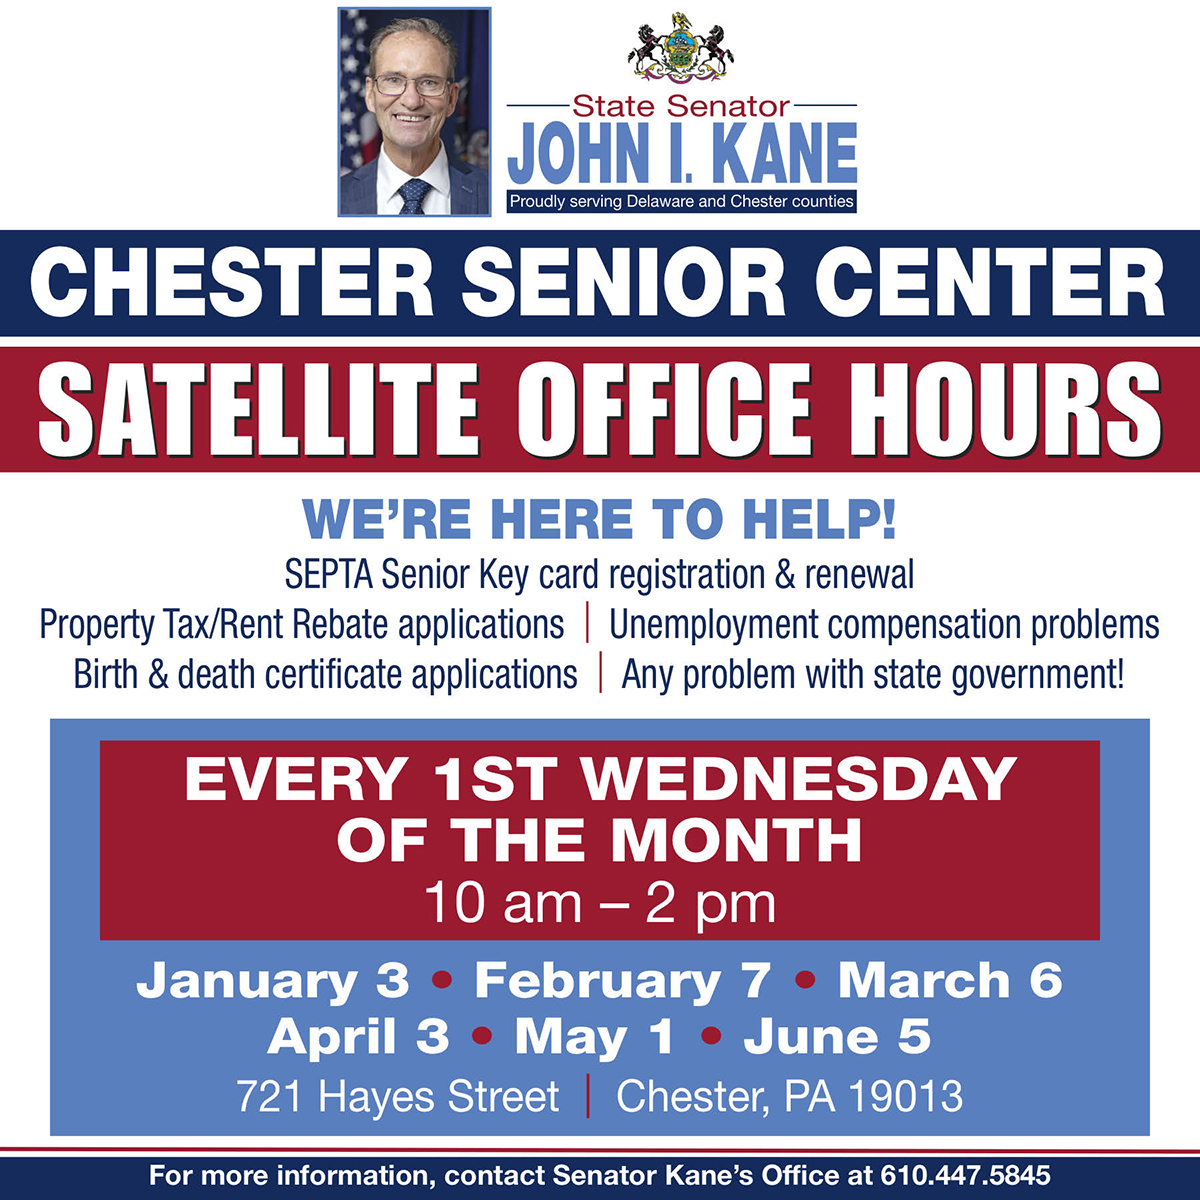 Chester Senior Center Satellite Office Hours